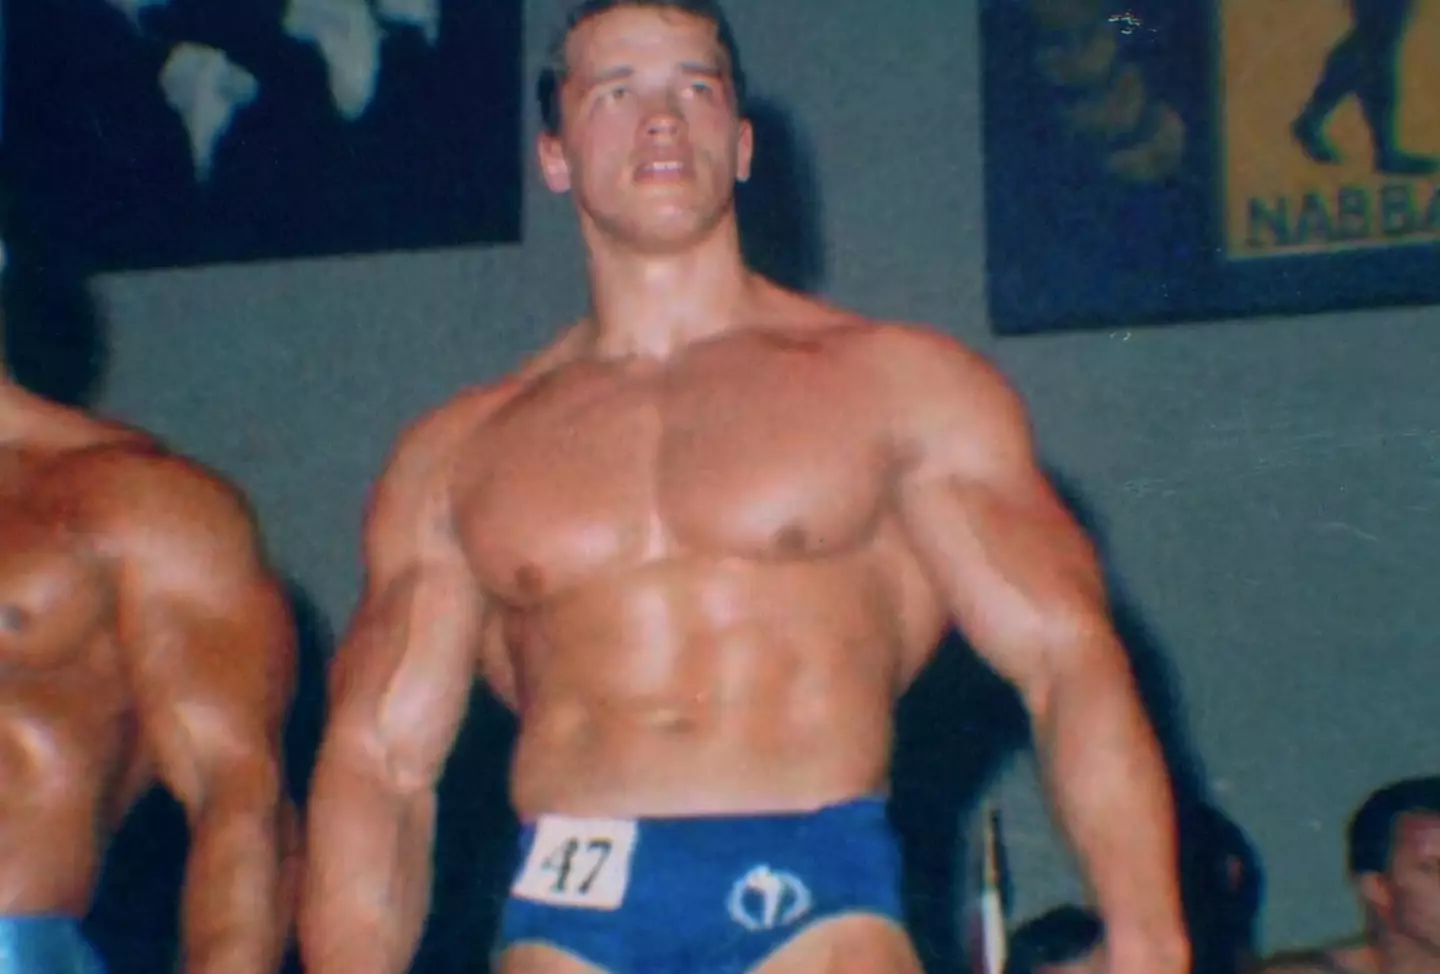 Schwarzenegger rose to fame as a bodybuilder.